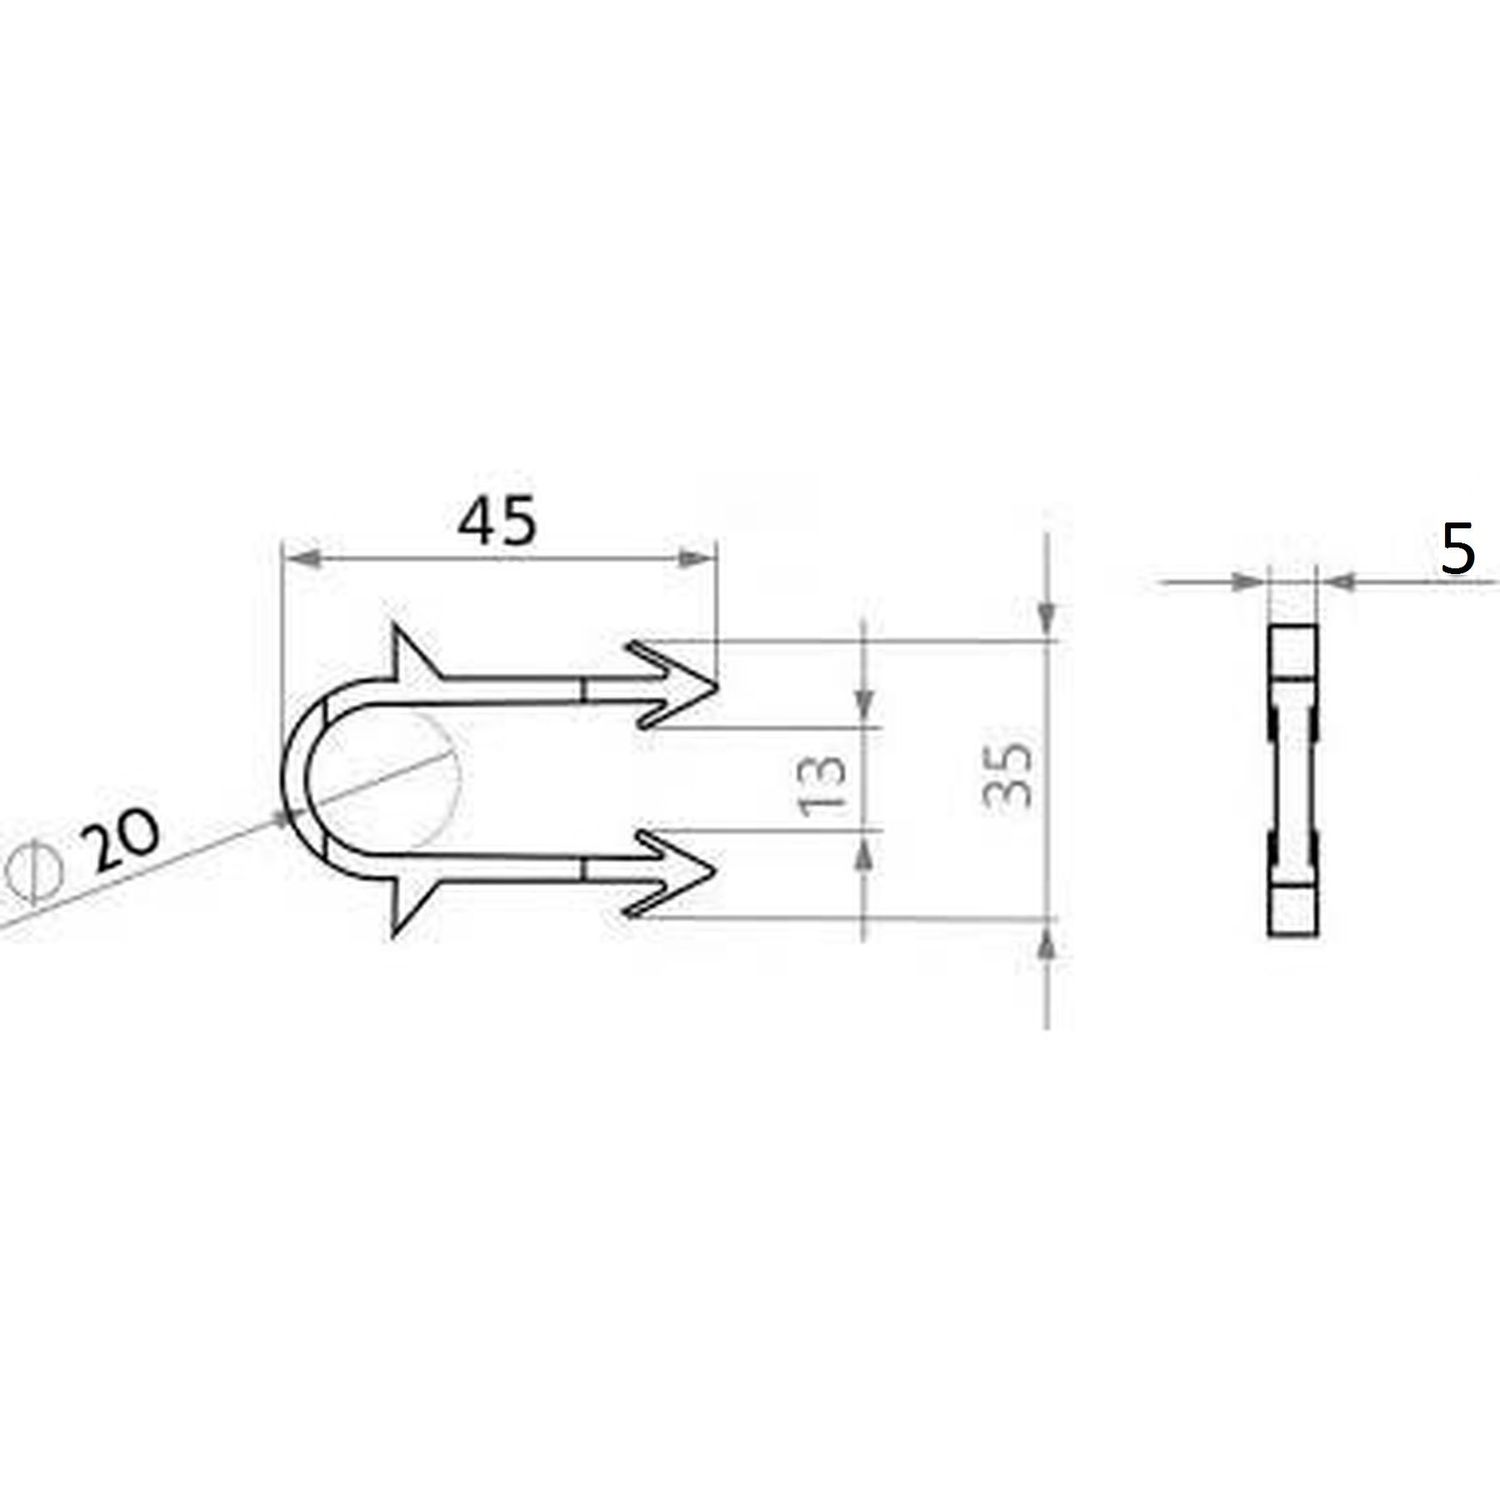 Такерная гарпун-скоба для крепления трубы теплого пола Ø16-20 длина 45мм черная (коробка 300шт)